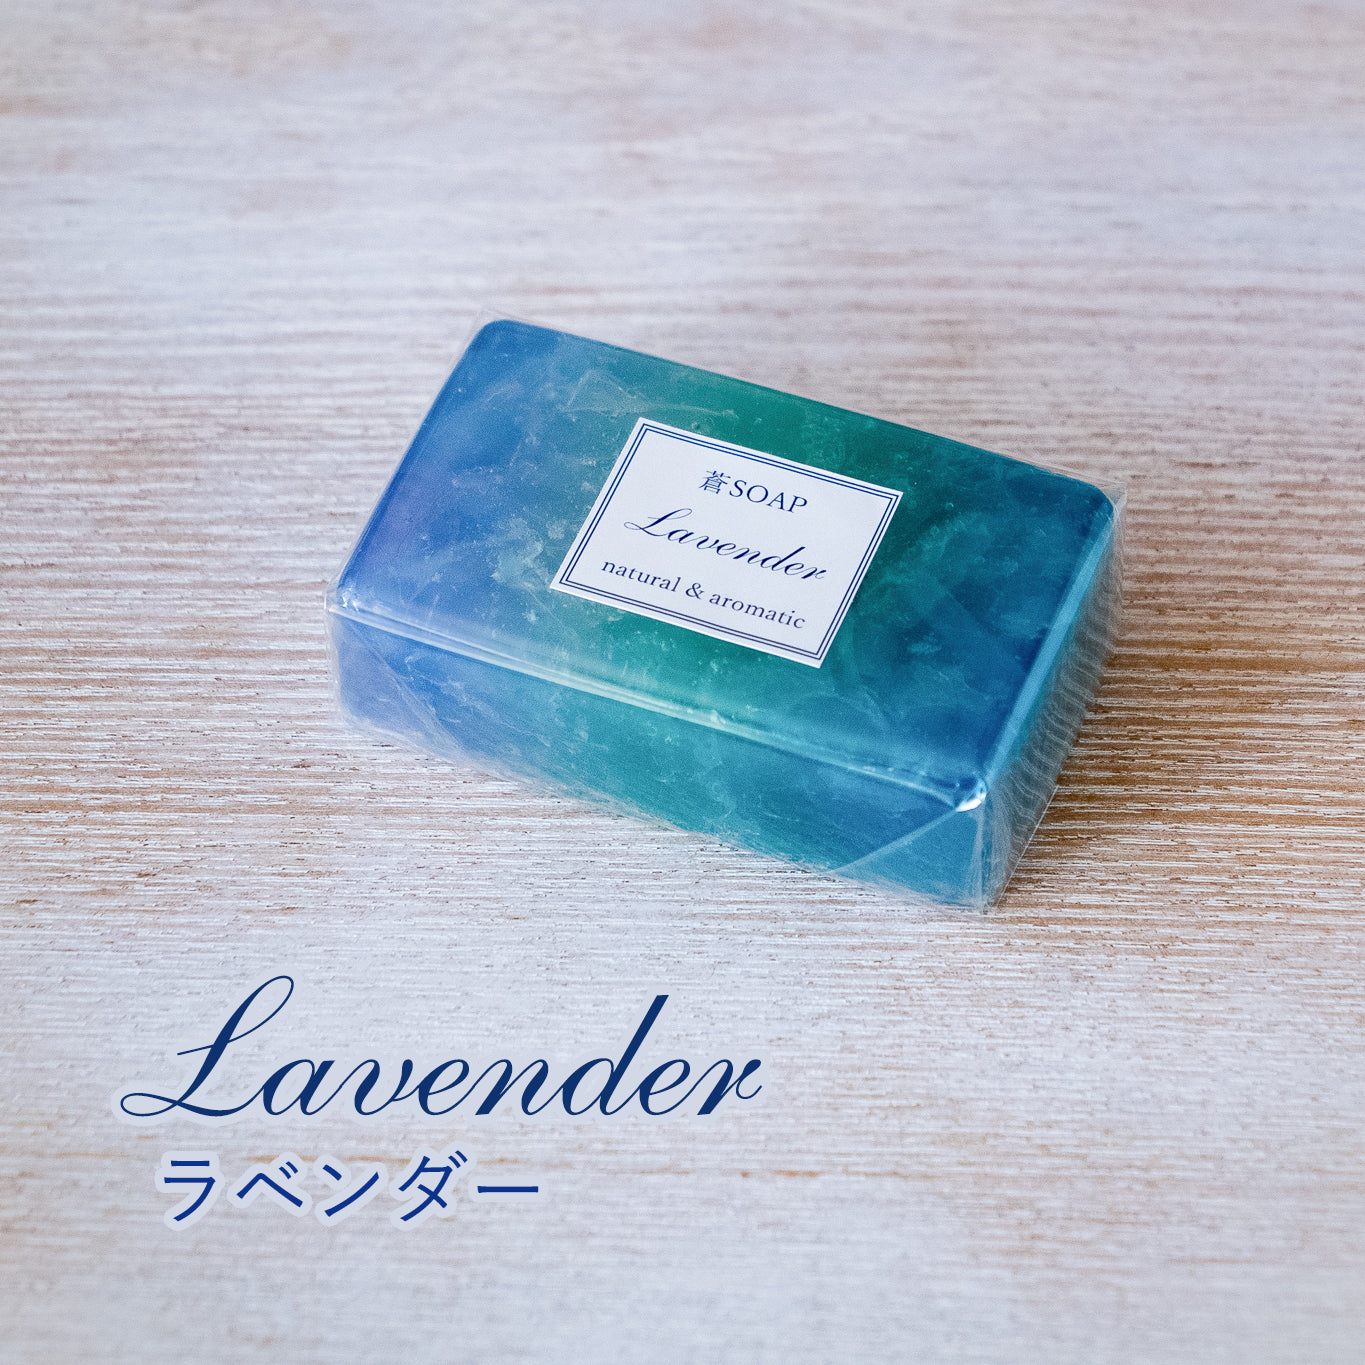 蒼SOAP（化粧石鹸）ラベンダー、ゼラニウム、オレンジの３種類